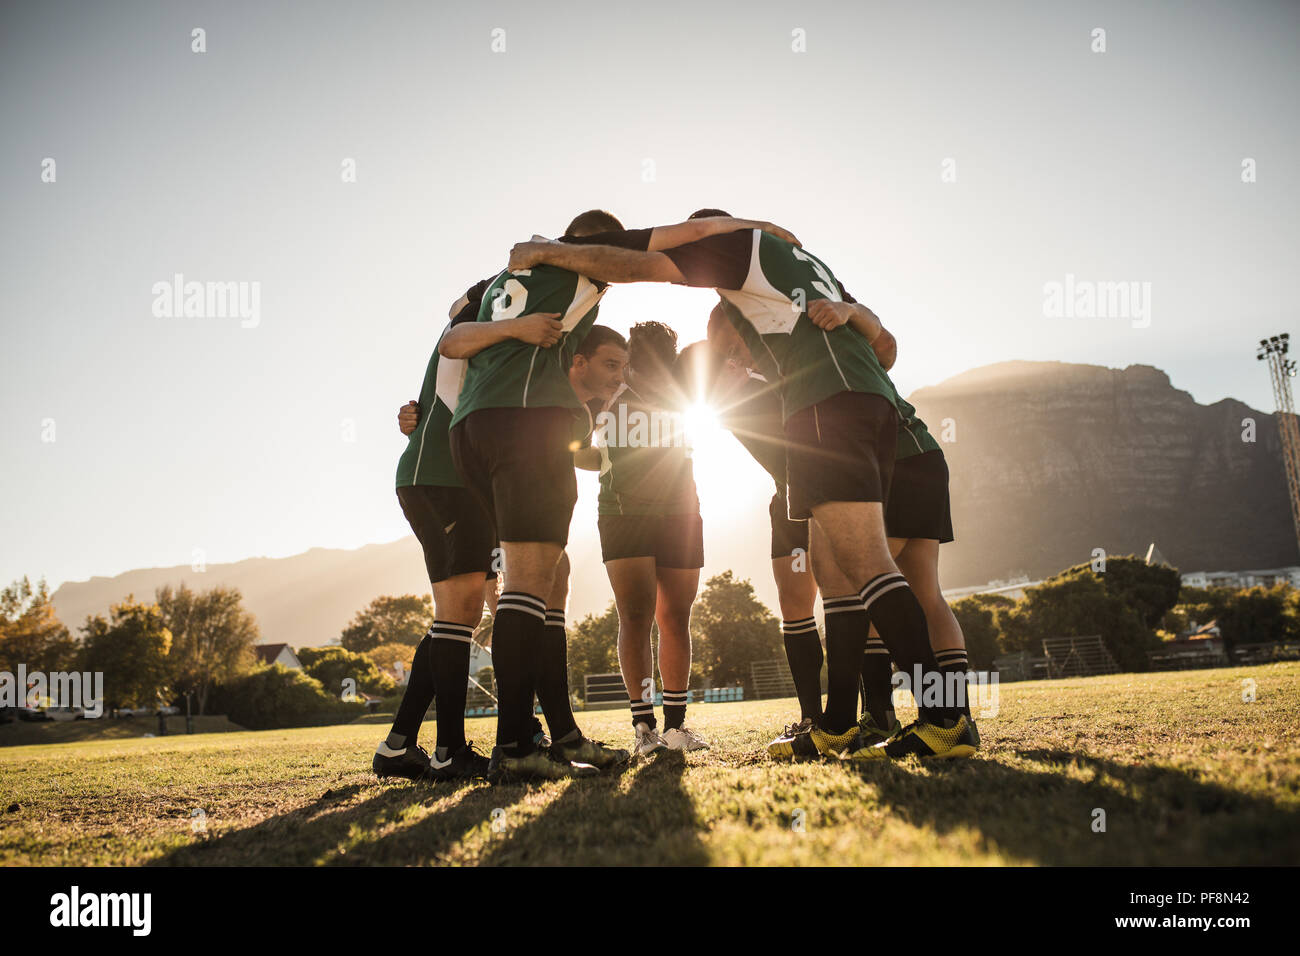 rugbyspieler stehen im Kreis mit den Händen auf den Schultern. Das rugby-Team ist nach dem Spiel in der Nähe. Strahlender Sonnenschein durch die Gemütlichkeit. Stockfoto